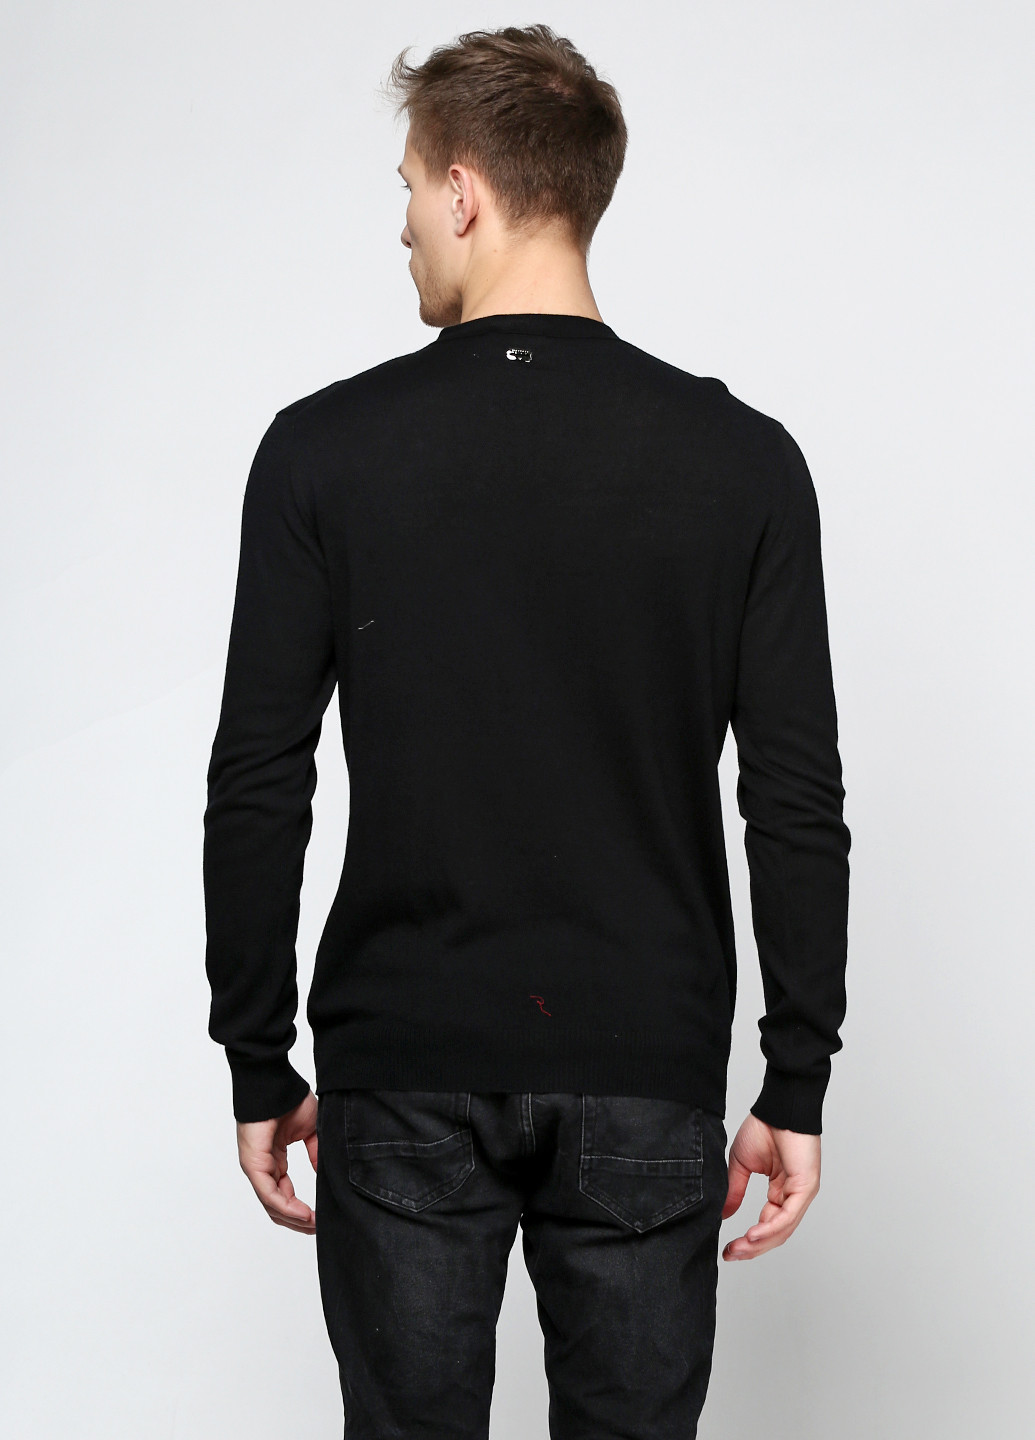 Черный демисезонный пуловер пуловер Richmond X